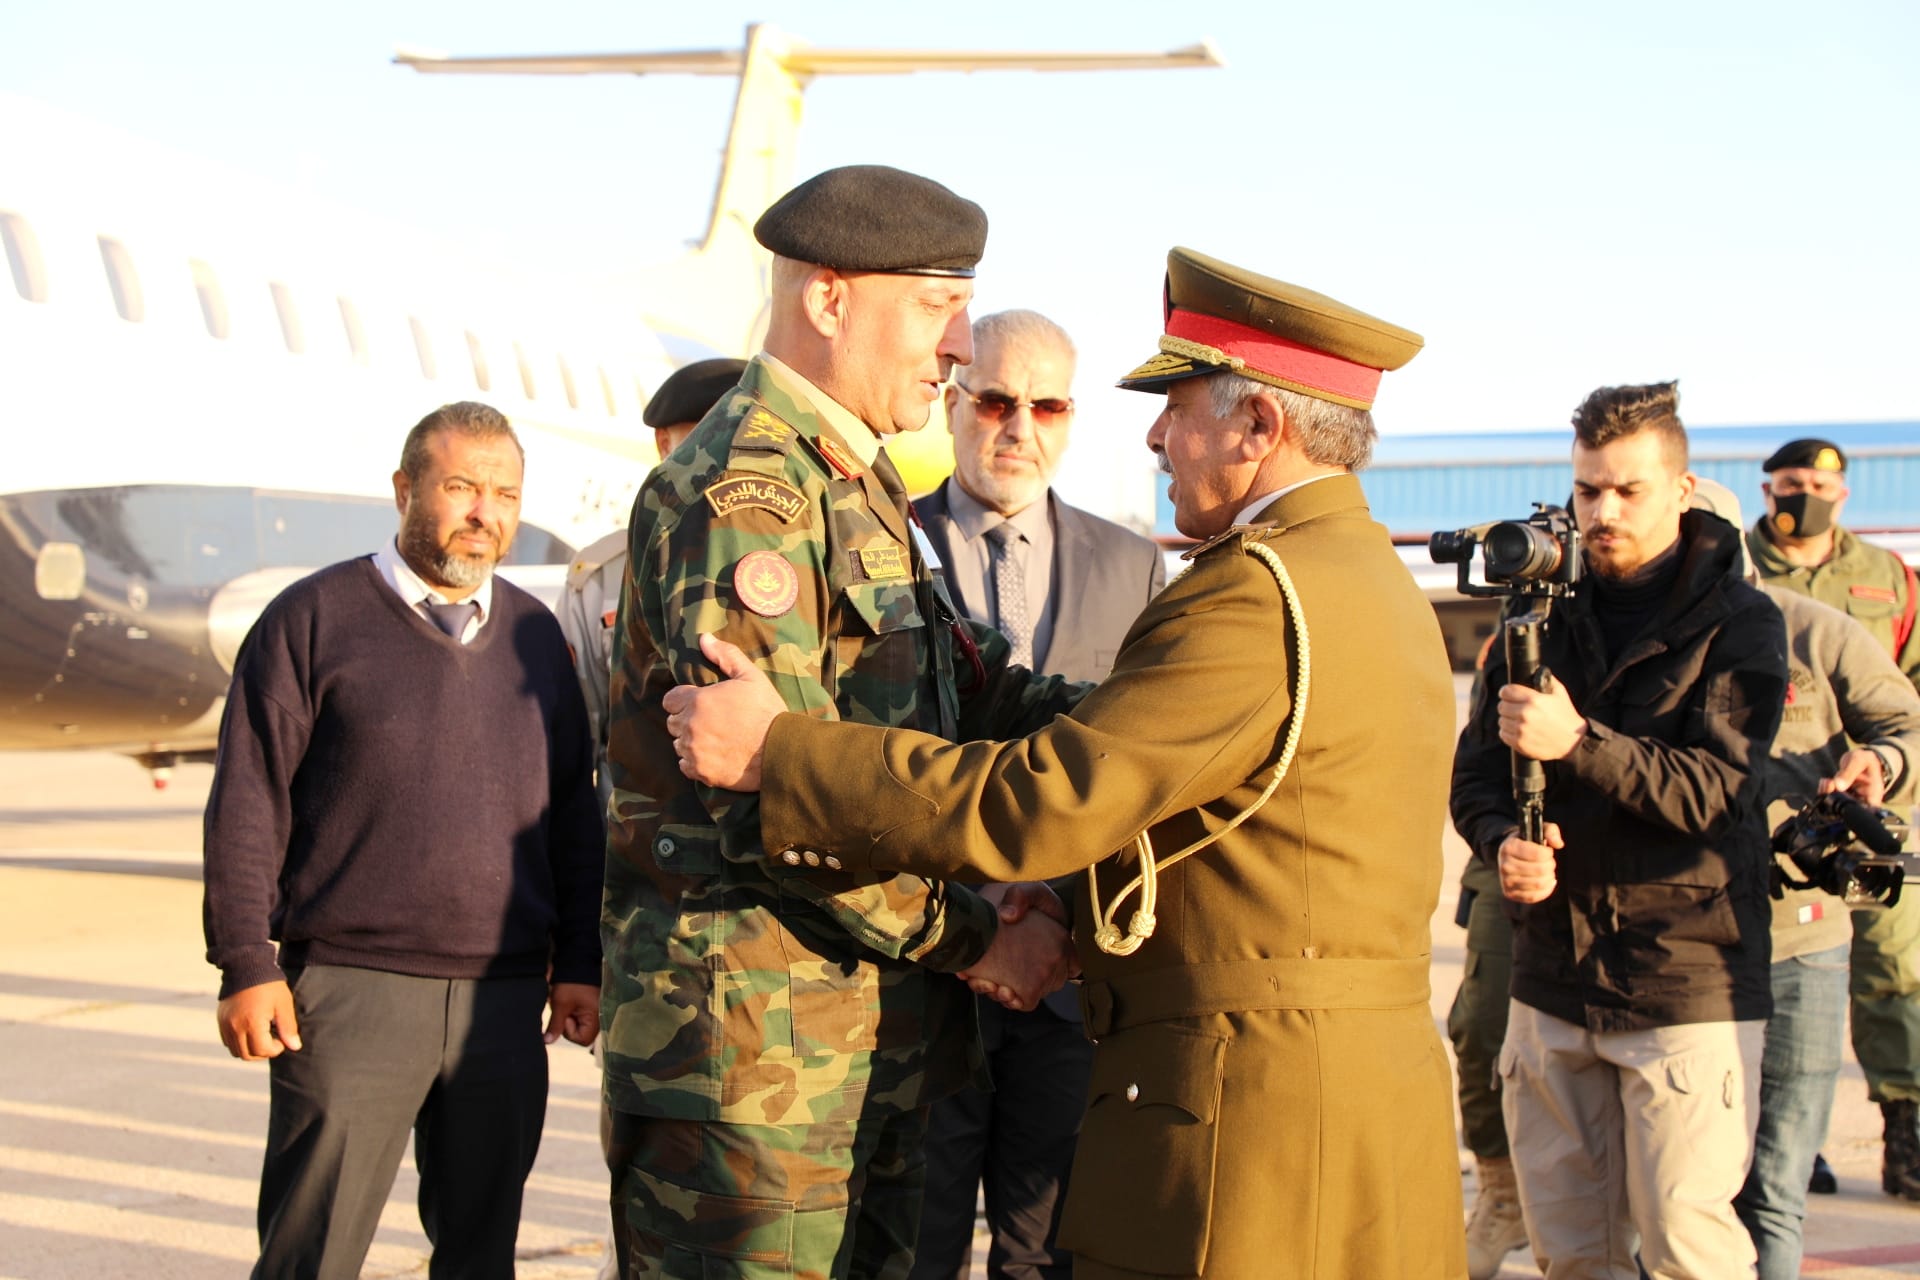 Des dirigeants de l'institution militaire réunis à Benghazi insistent sur l'unité du sol libyen, le caractère sacré du sang et l'établissement d'un État civil.